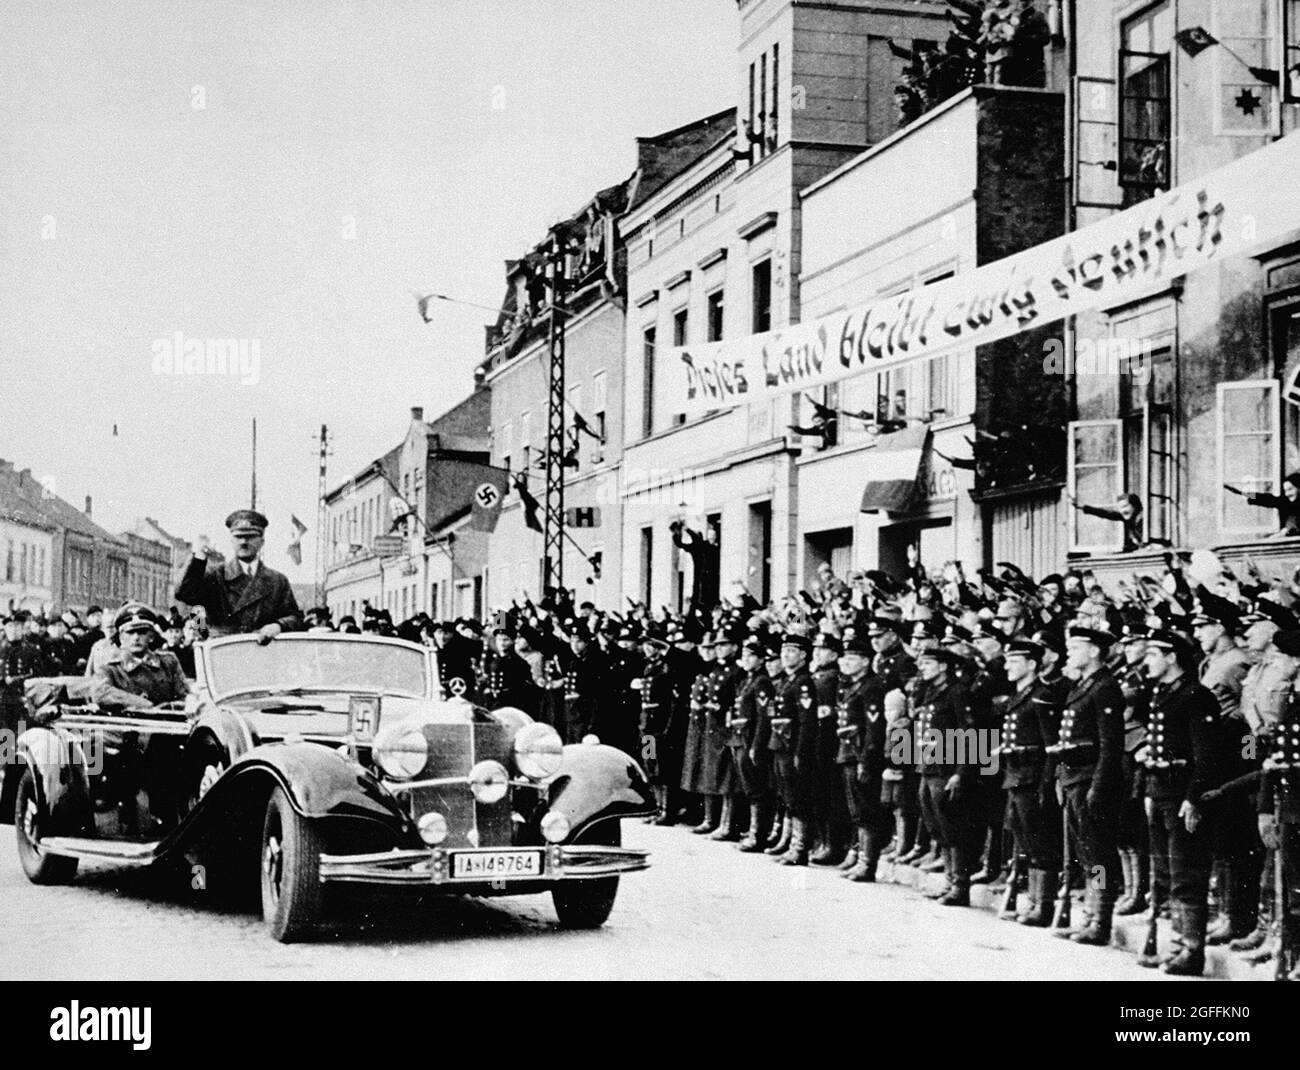 Adolf Hitler a Memel nel marzo 1939 dopo che i nazisti annesse la zona dalla Lituania (Klaipéda in lituano) dopo che i lituani si prostrarono verso l'ultimatum tedesco per cedere il territorio o affrontare un'azione militare. Il banner recita: "Questo paese rimarrà eternamente tedesco" Foto Stock